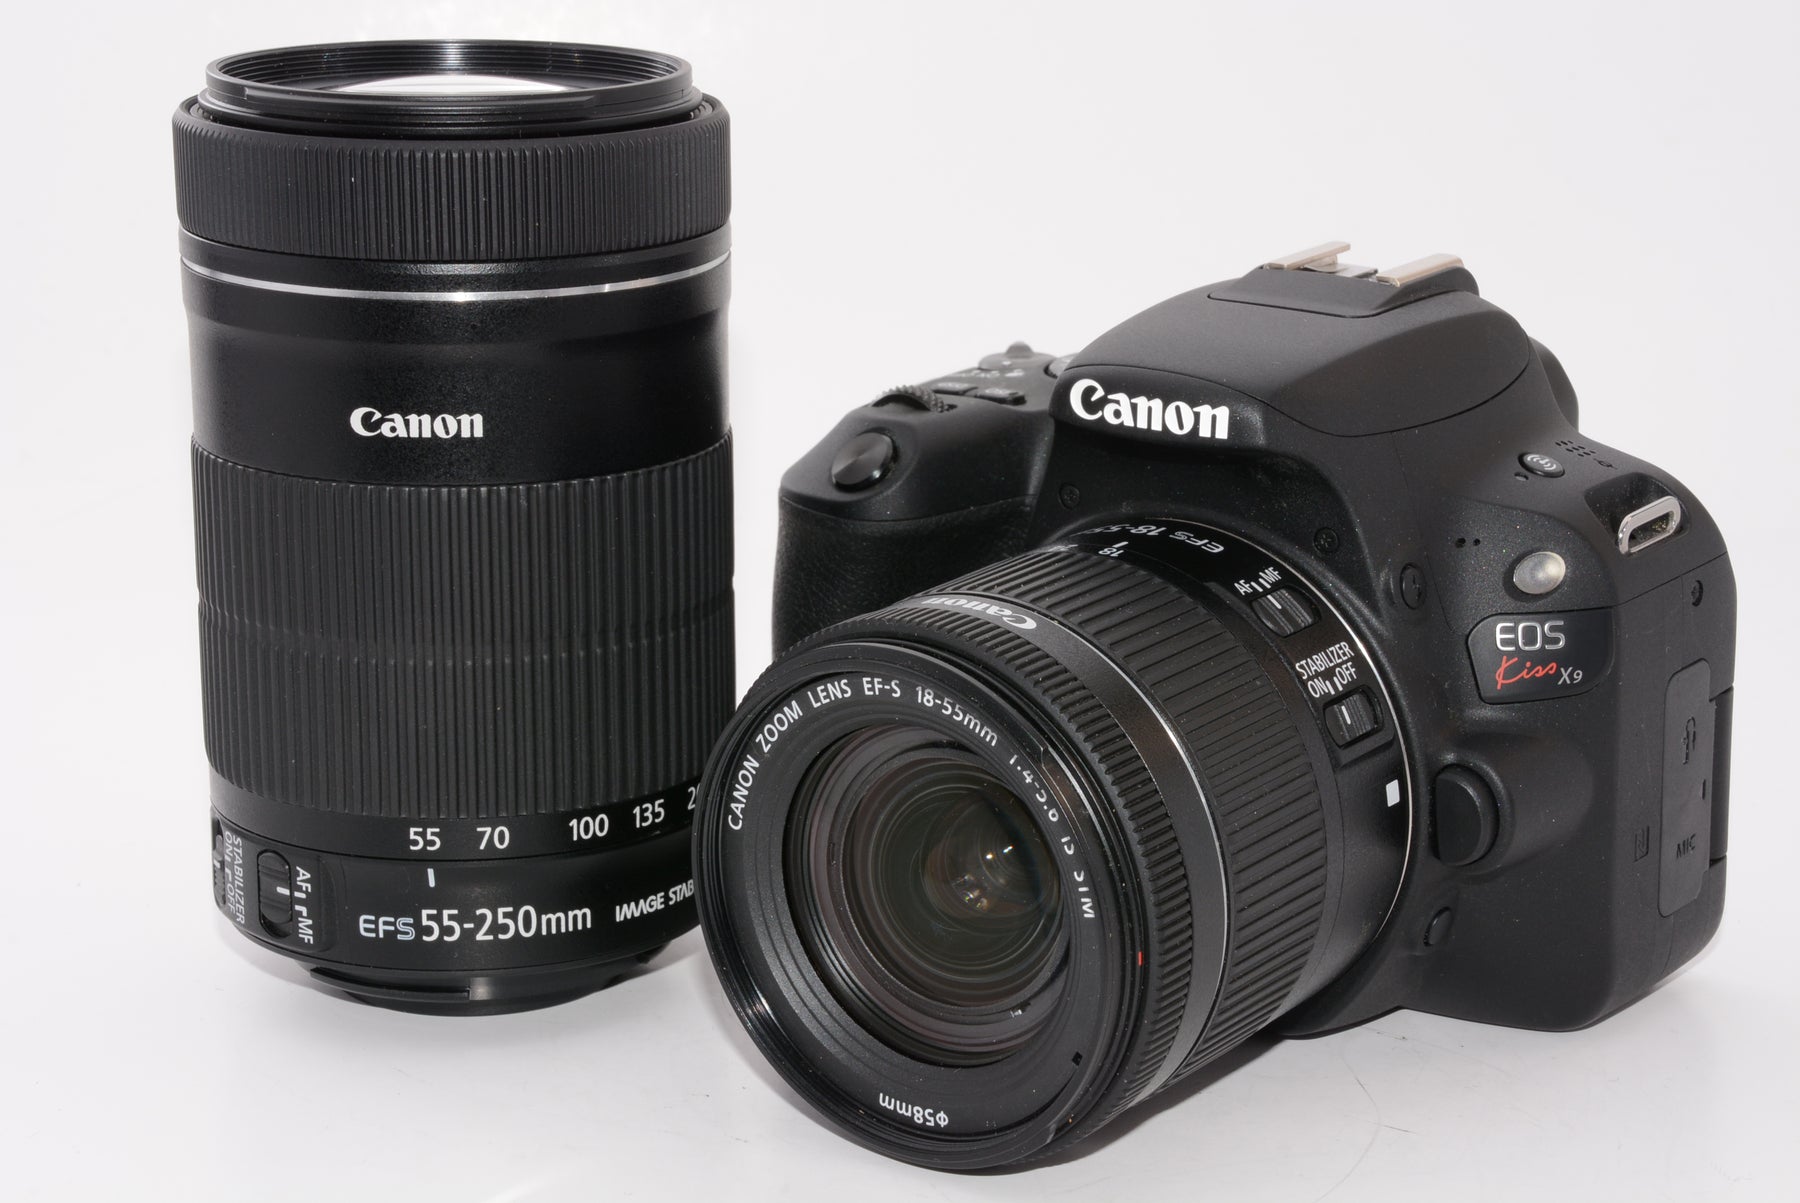 【外観特上級】Canon デジタル一眼レフカメラ「EOS Kiss X9」ダブルズームキット (ブラック) EOSKISSX9BK-WKIT